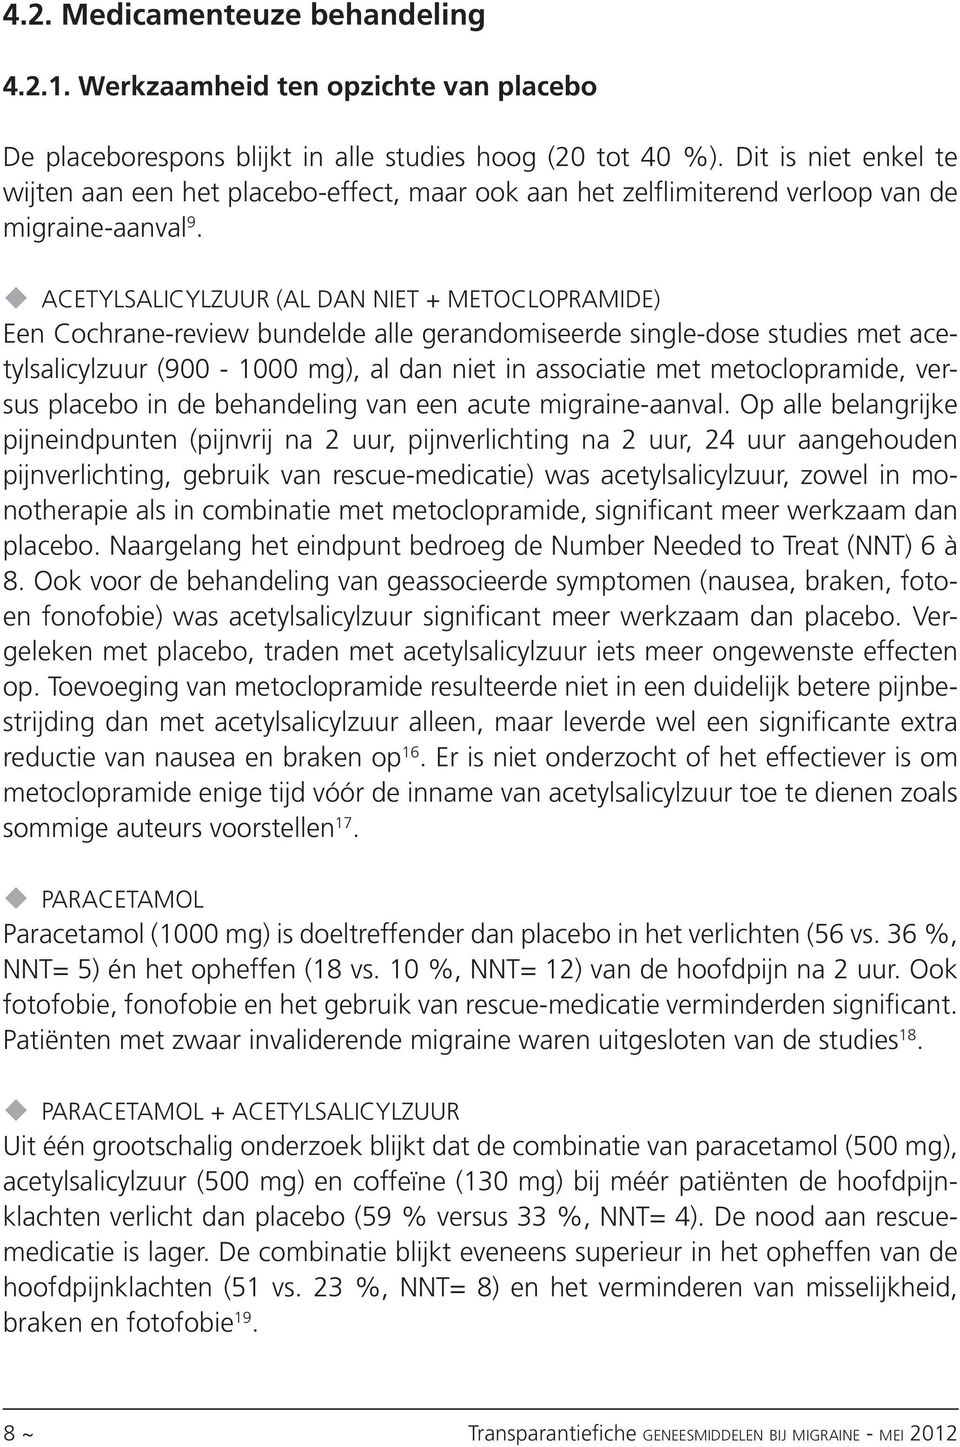 Acetylsalicylzuur (al dan niet + metoclopramide) Een Cochrane-review bundelde alle gerandomiseerde single-dose studies met acetylsalicylzuur (900-1000 mg), al dan niet in associatie met